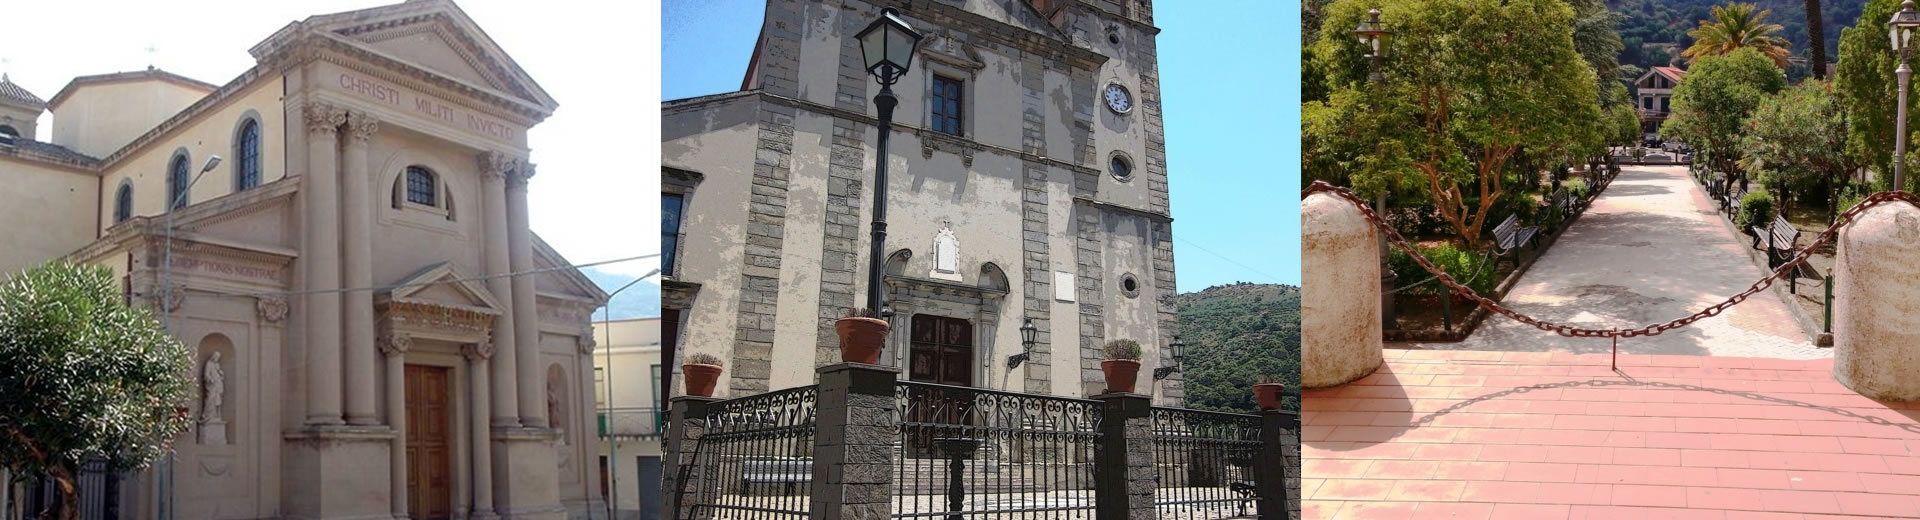 Chiesa di San Sebastiano - Chiesa di San Basilio - Villa Comunale